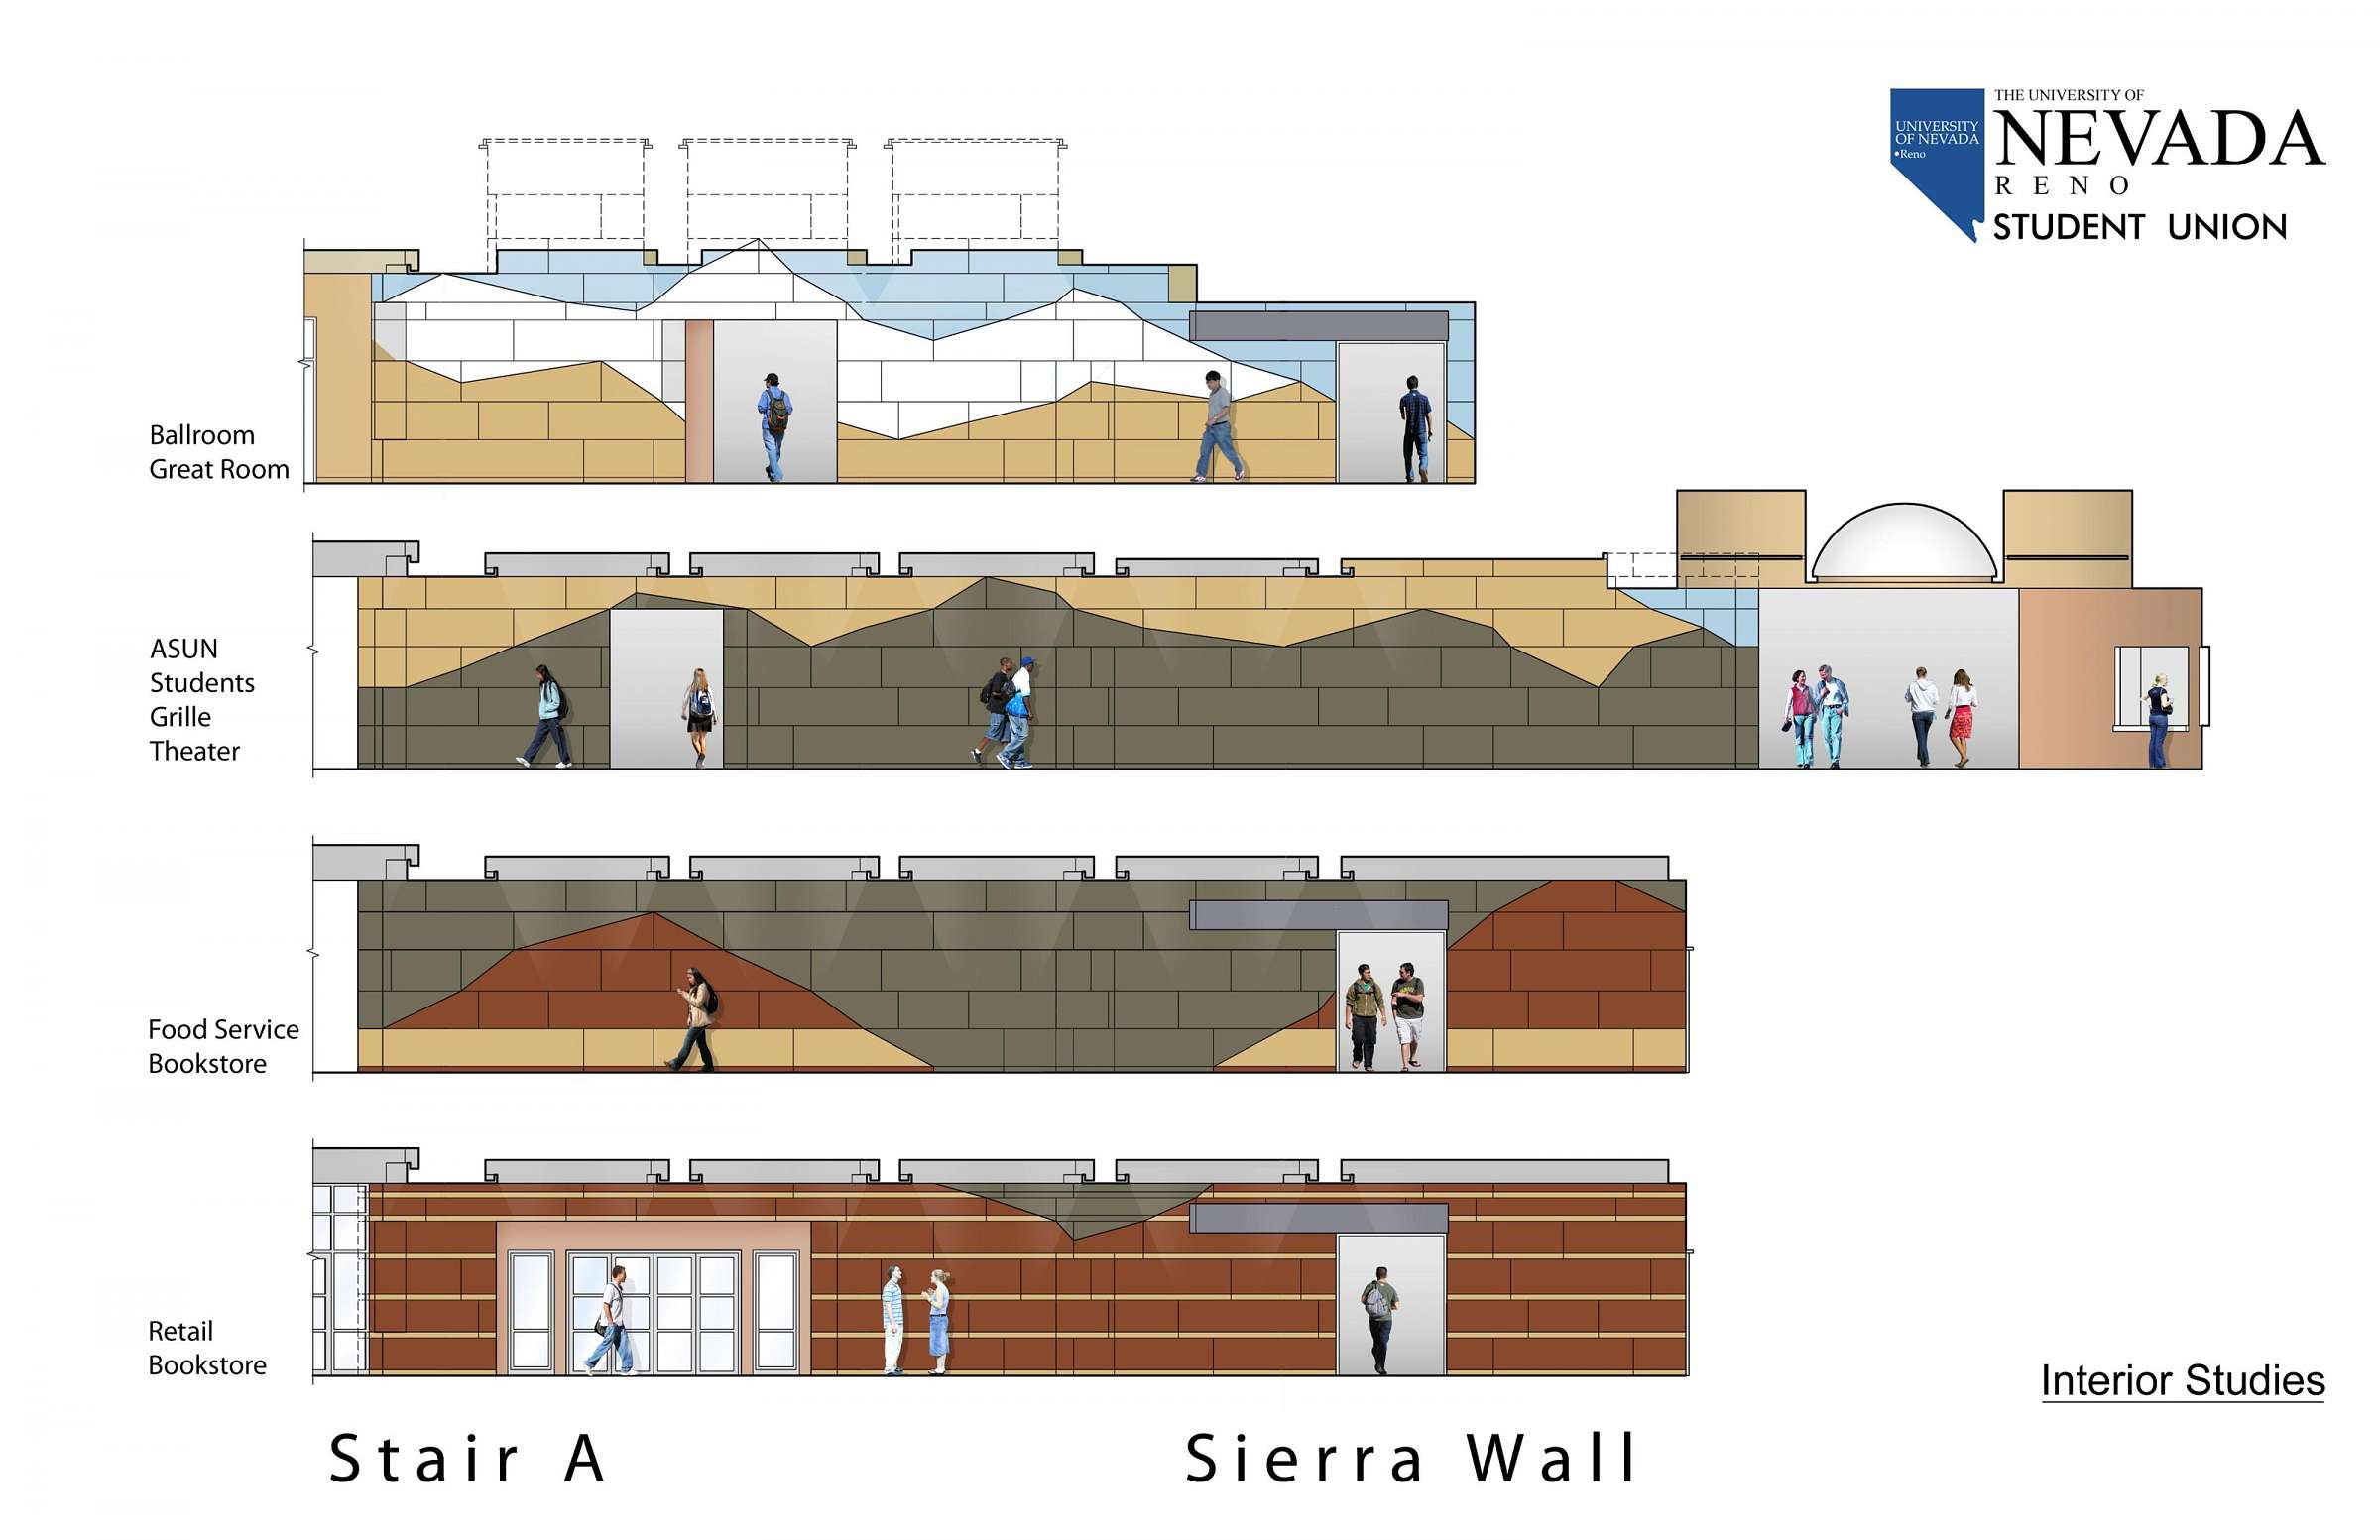 Sierra Wall study